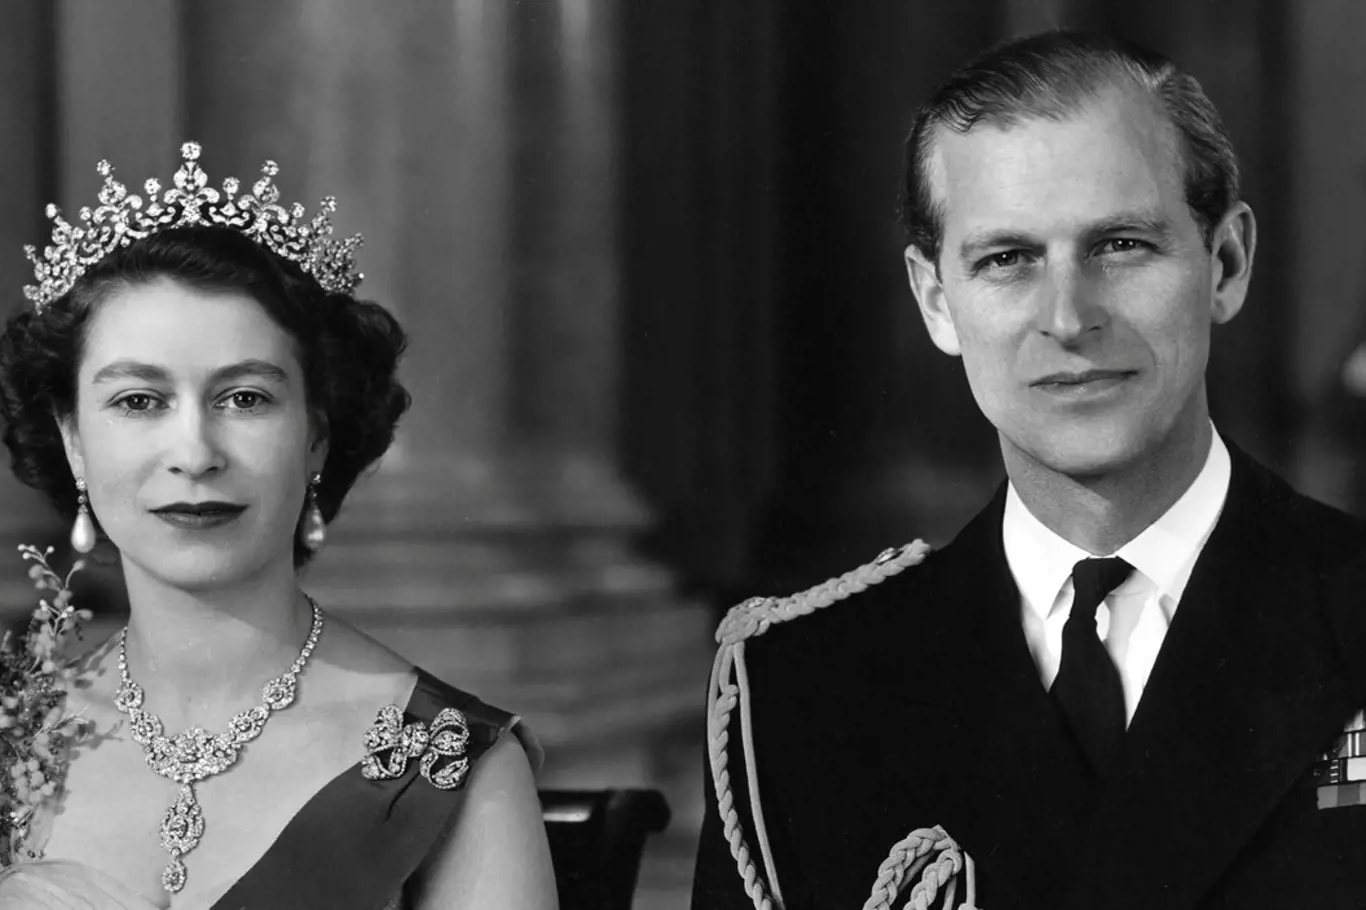 Královna Alžběta II. dostala jako svatební dar úchvatný náhrdelník. 